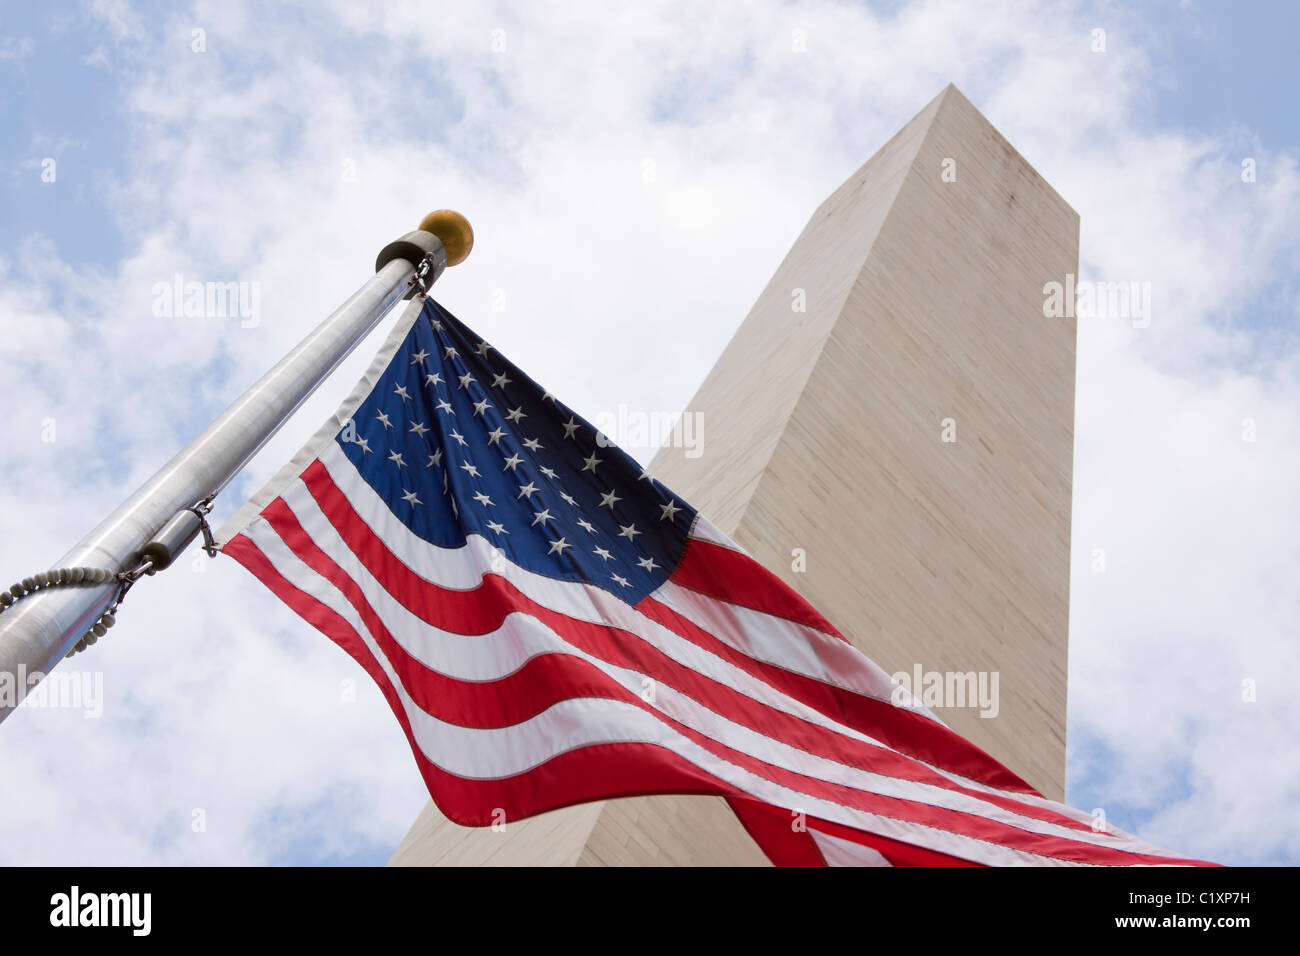 Washington Monument, Washington, DC Stock Photo